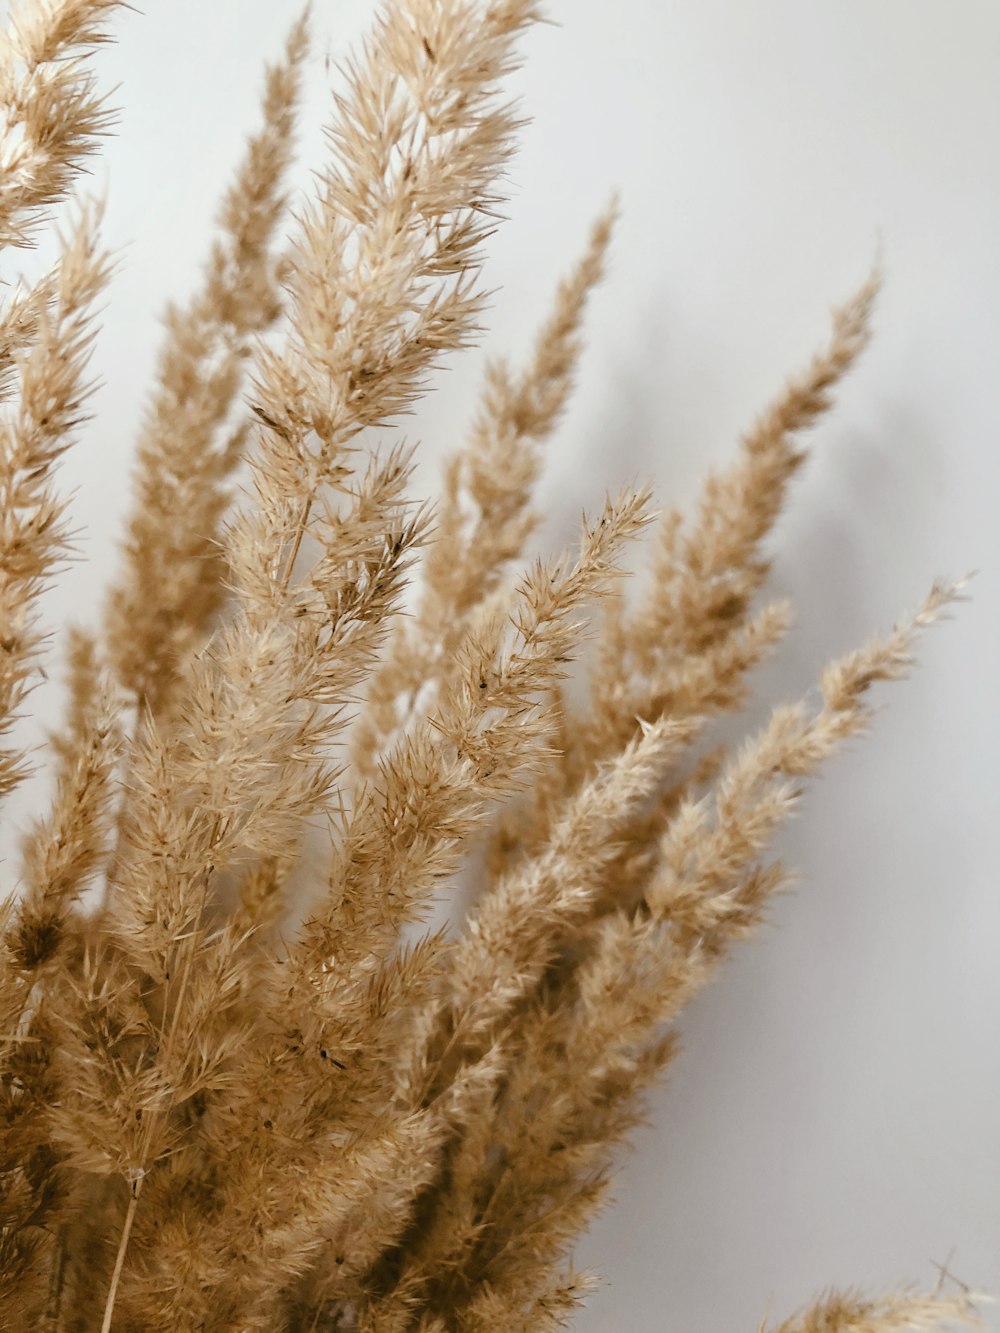 クローズアップ写真の茶色の小麦